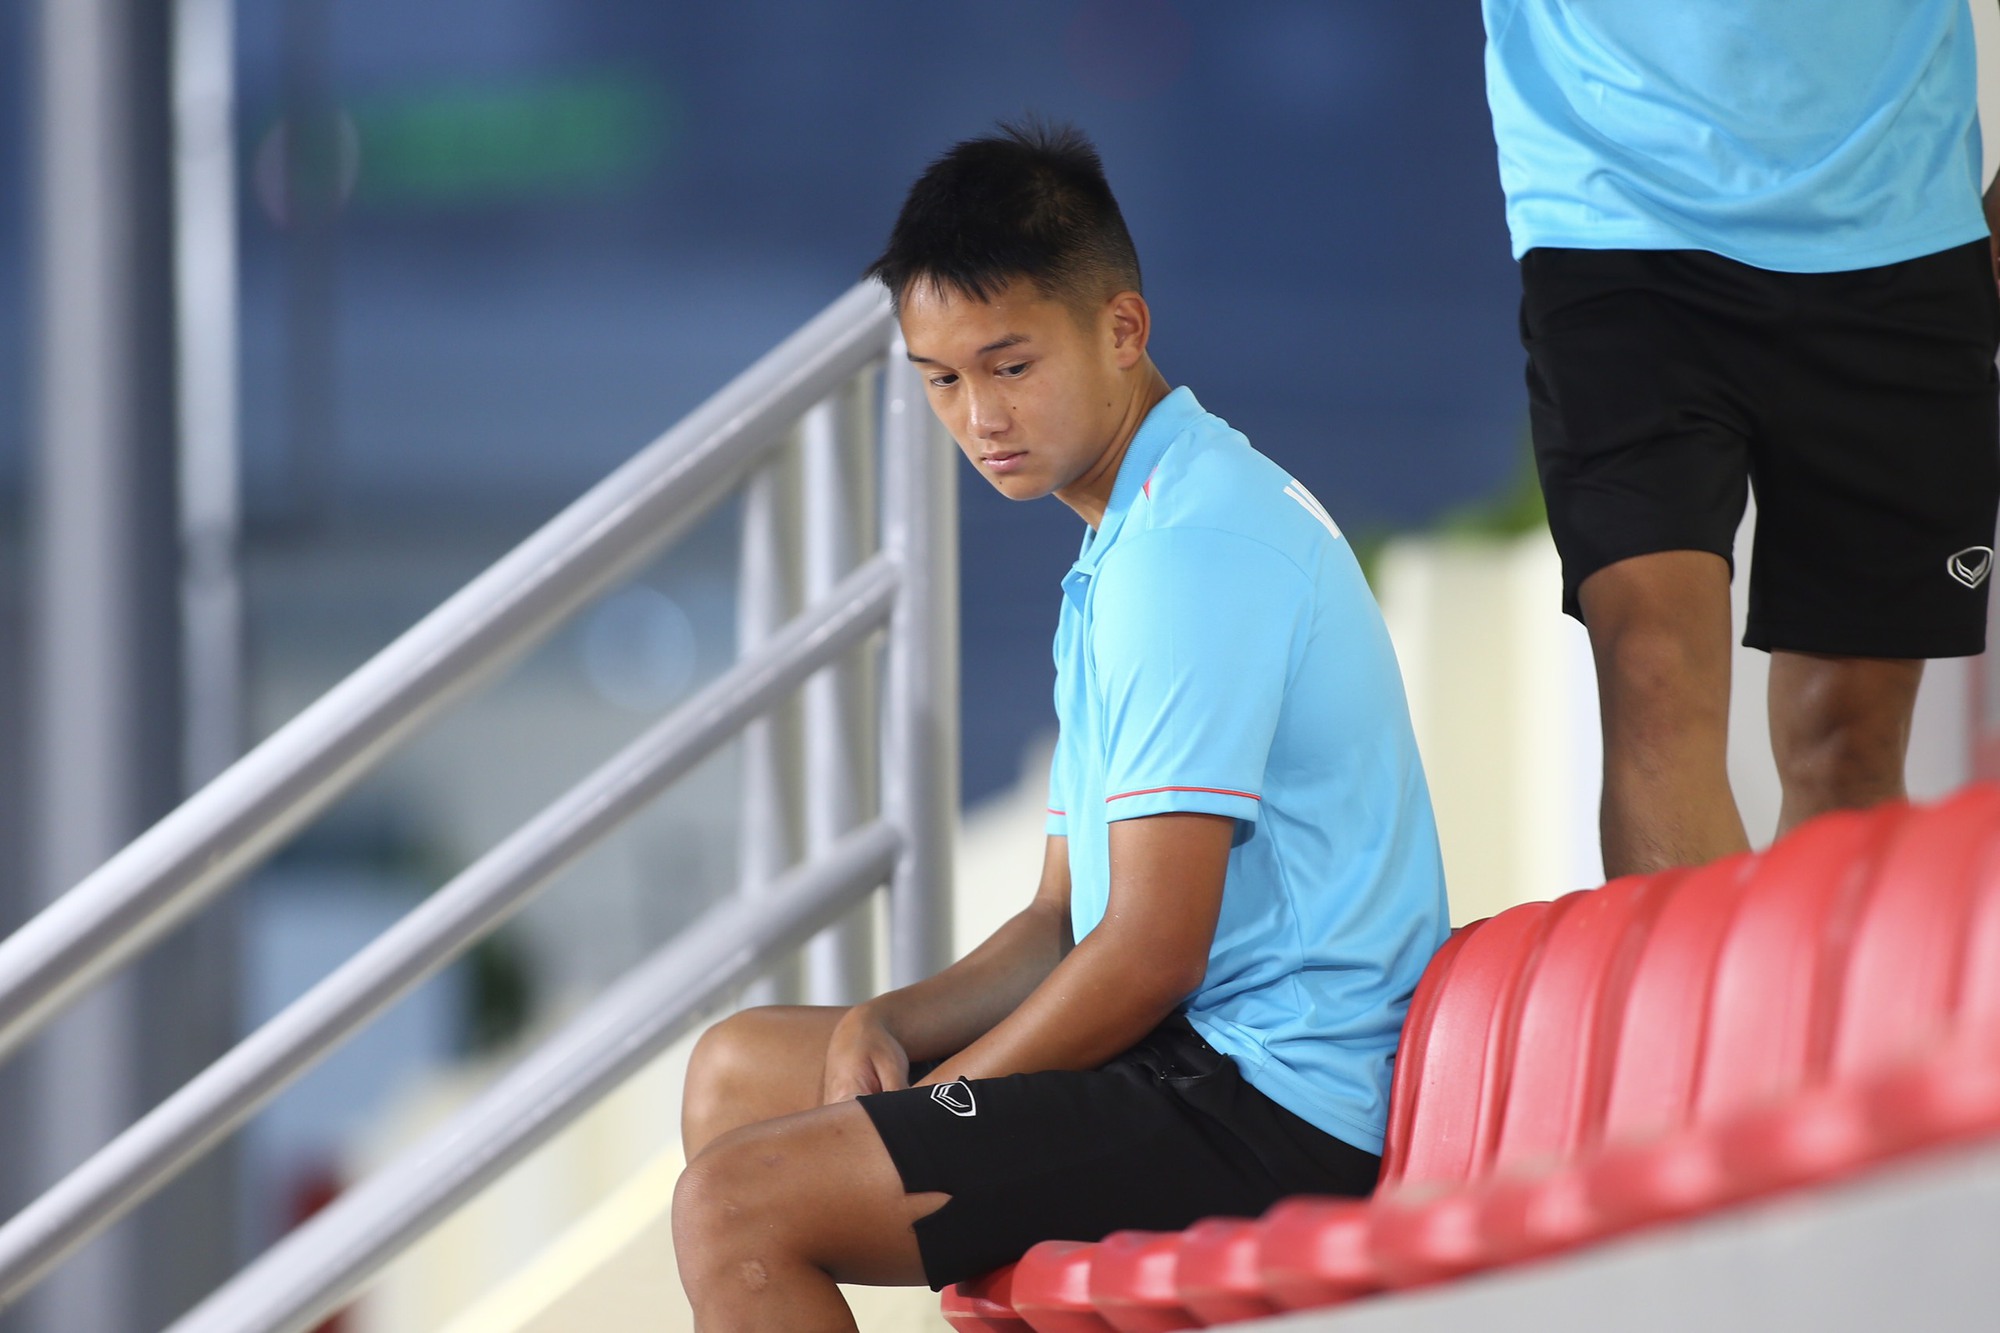 Tiền vệ Việt kiều bất ngờ rời đội sau khi được chuyển lên tuyển Việt Nam - Ảnh 2.